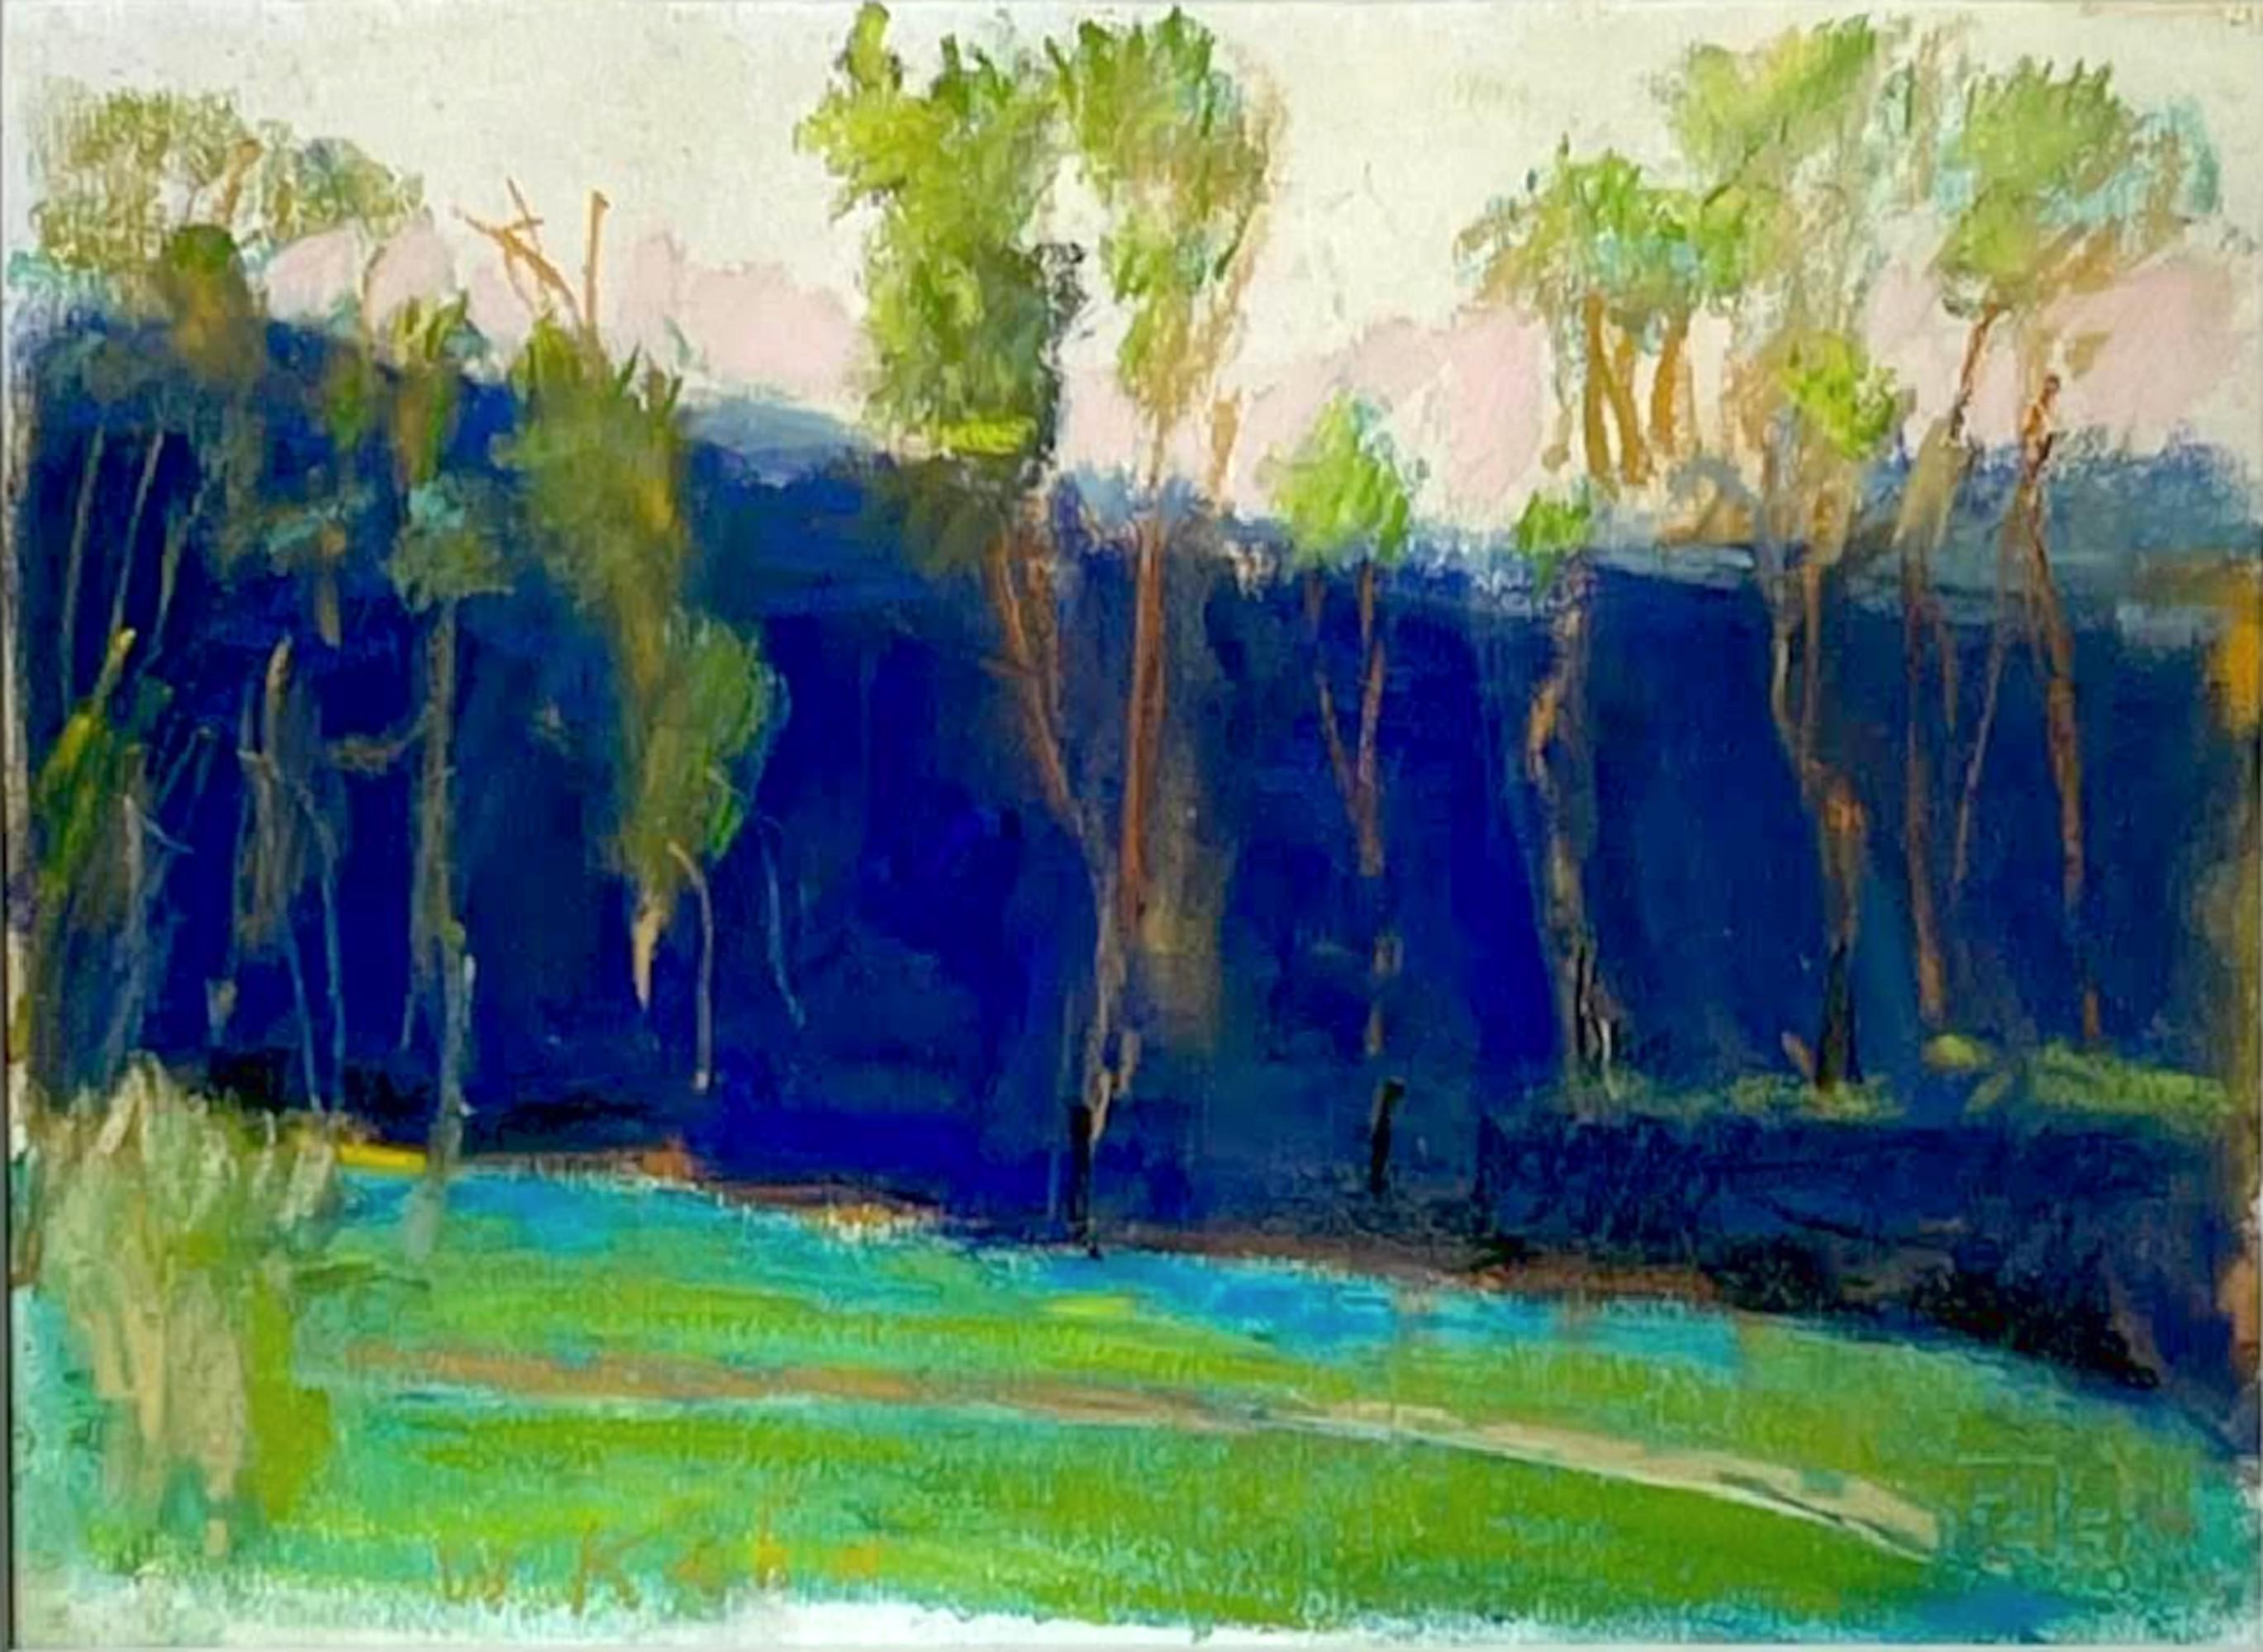 Landscape Art Wolf Kahn - Blau-Grün (Blue-Green) peinture pastel unique signée, authentifiée, encadrée